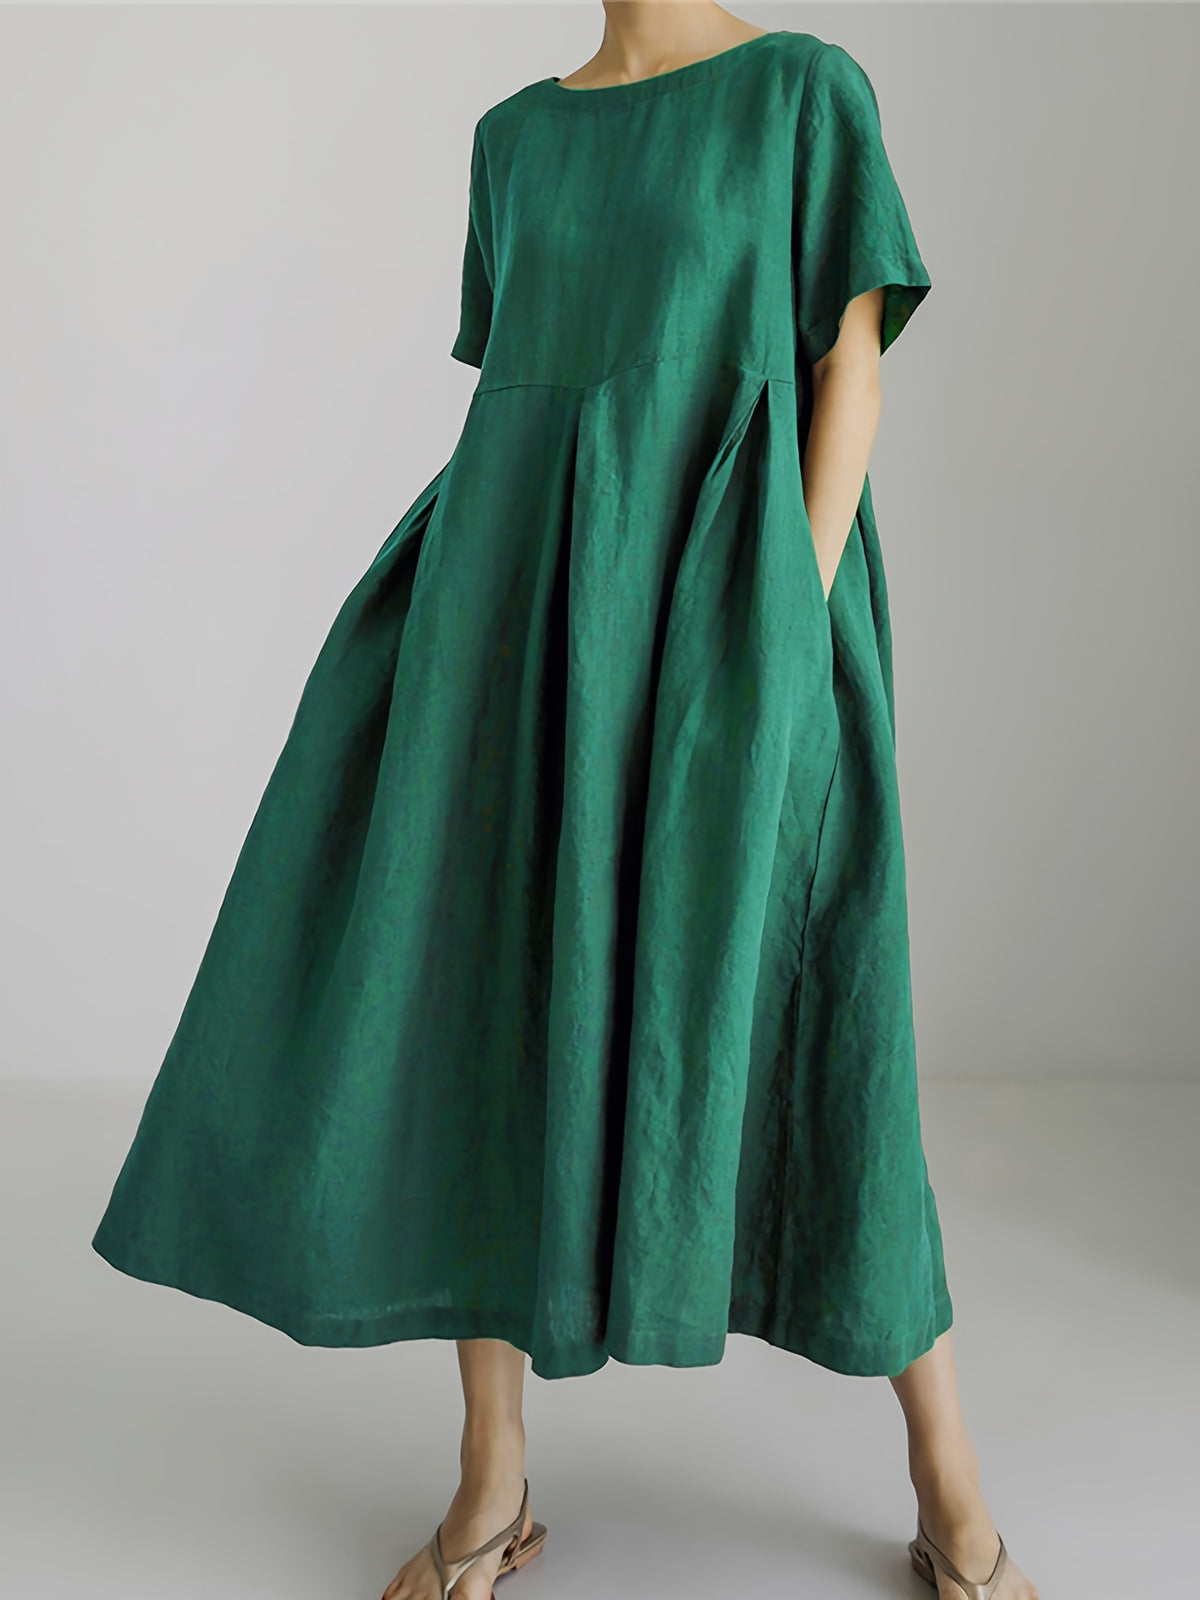 Julie | Damen Einfarbiges Leinenkleid Kleid